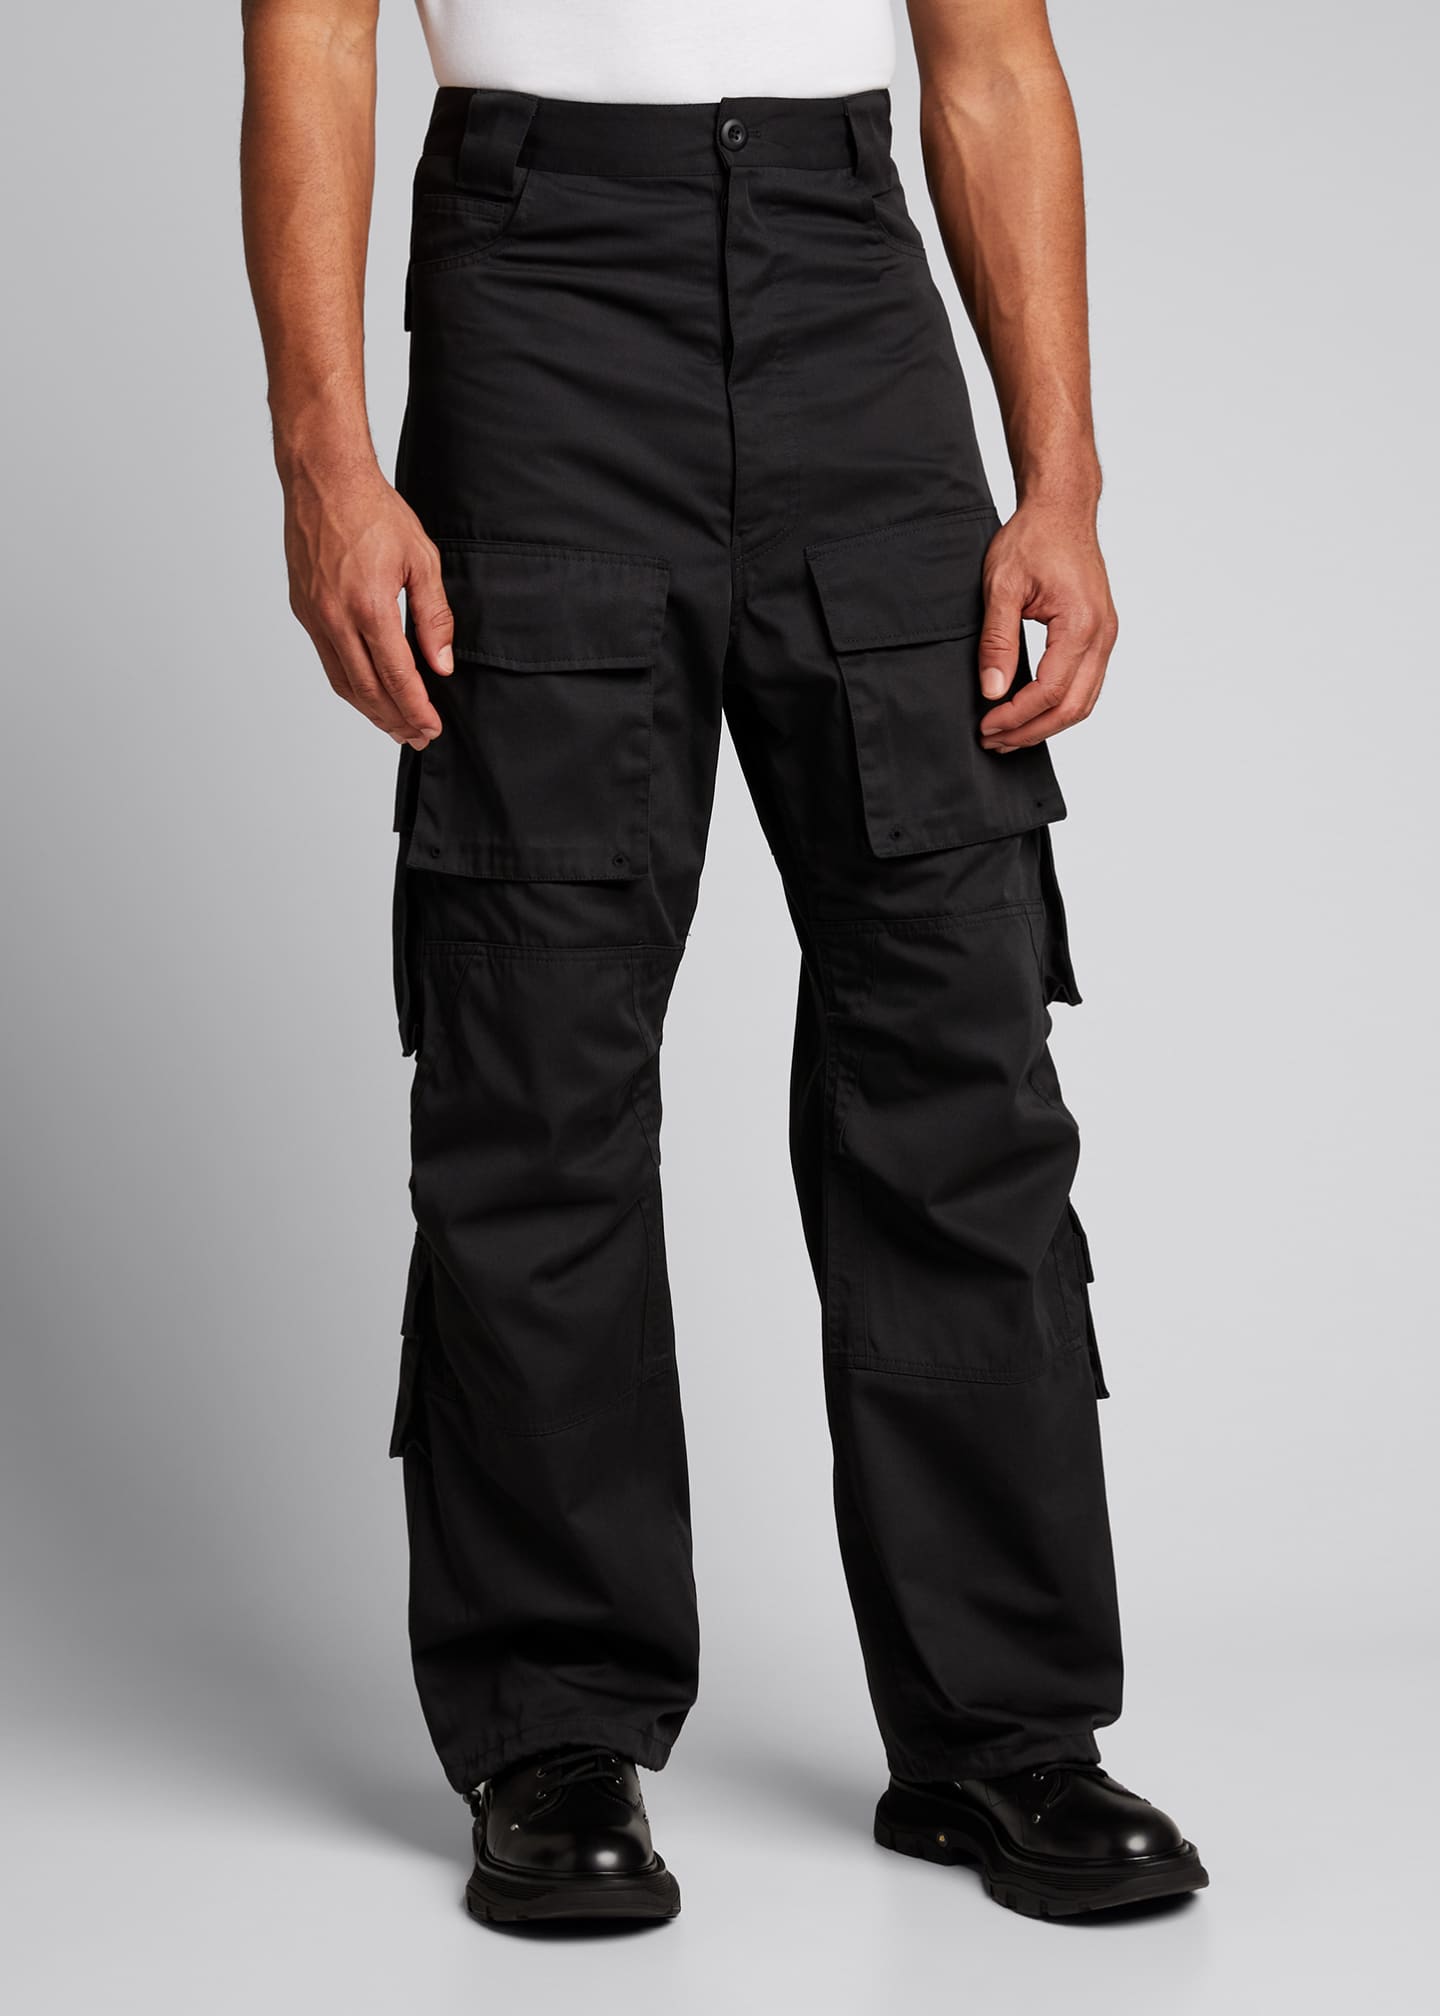 Balenciaga Men's Wide-Leg Tech Cargo Pants - Bergdorf Goodman